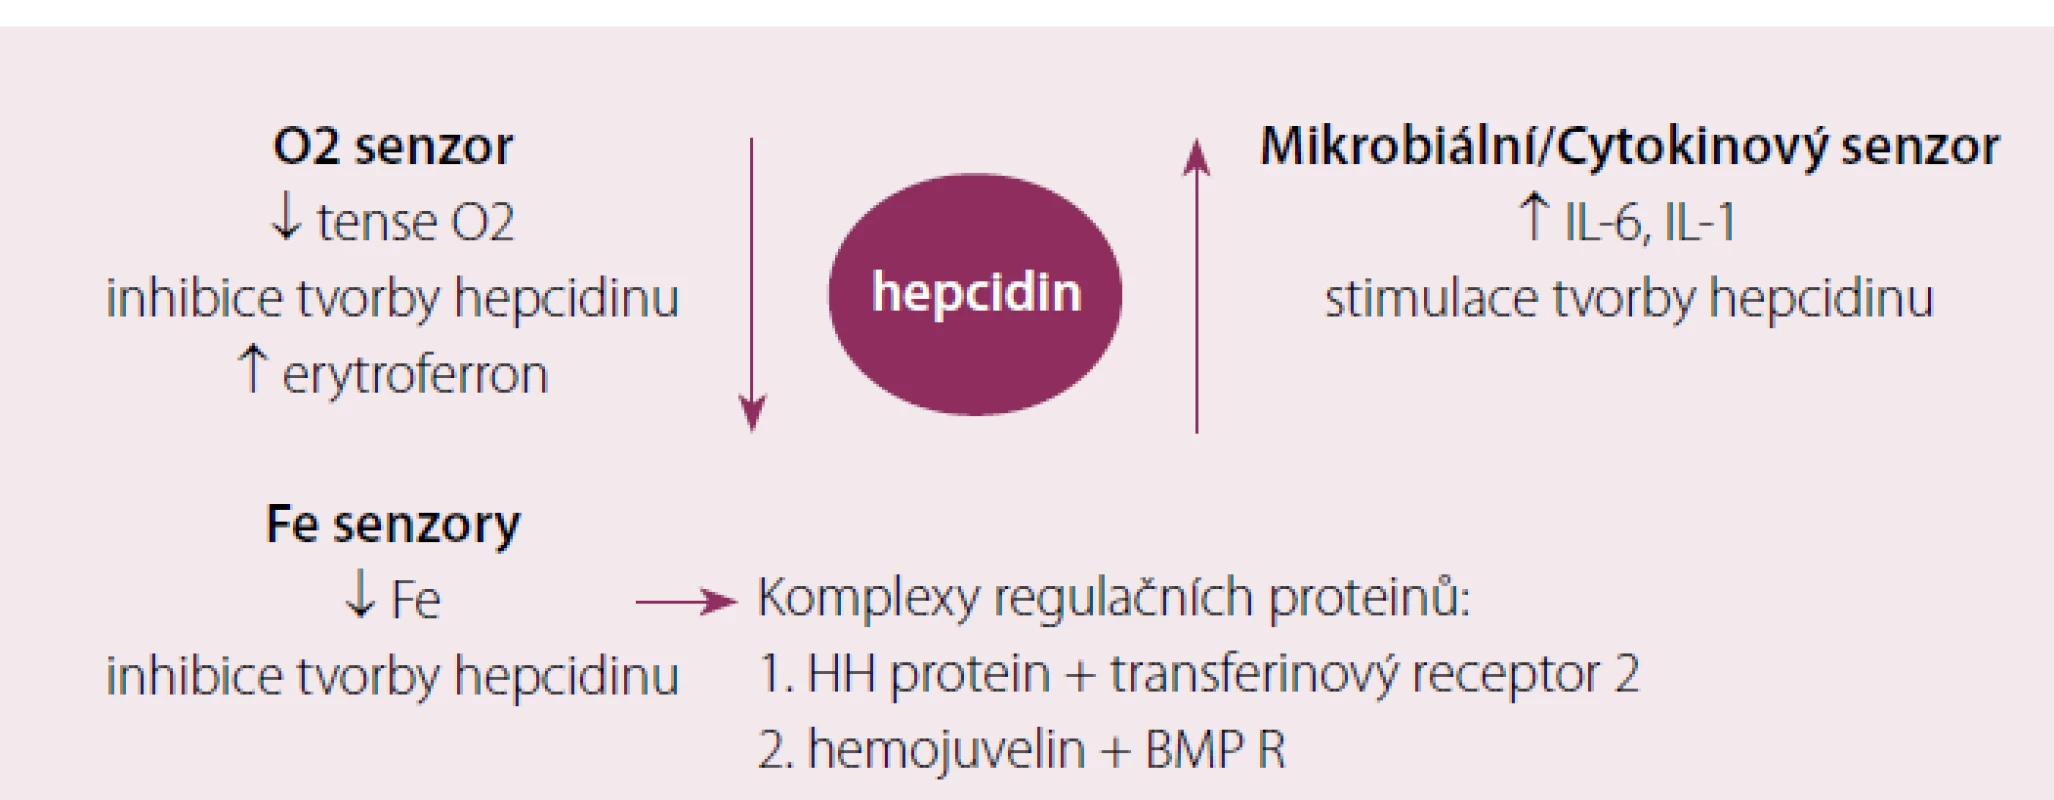 Přehled jednotlivých mechanizmů uplatňujících se v regulaci tvorby hepcidinu.